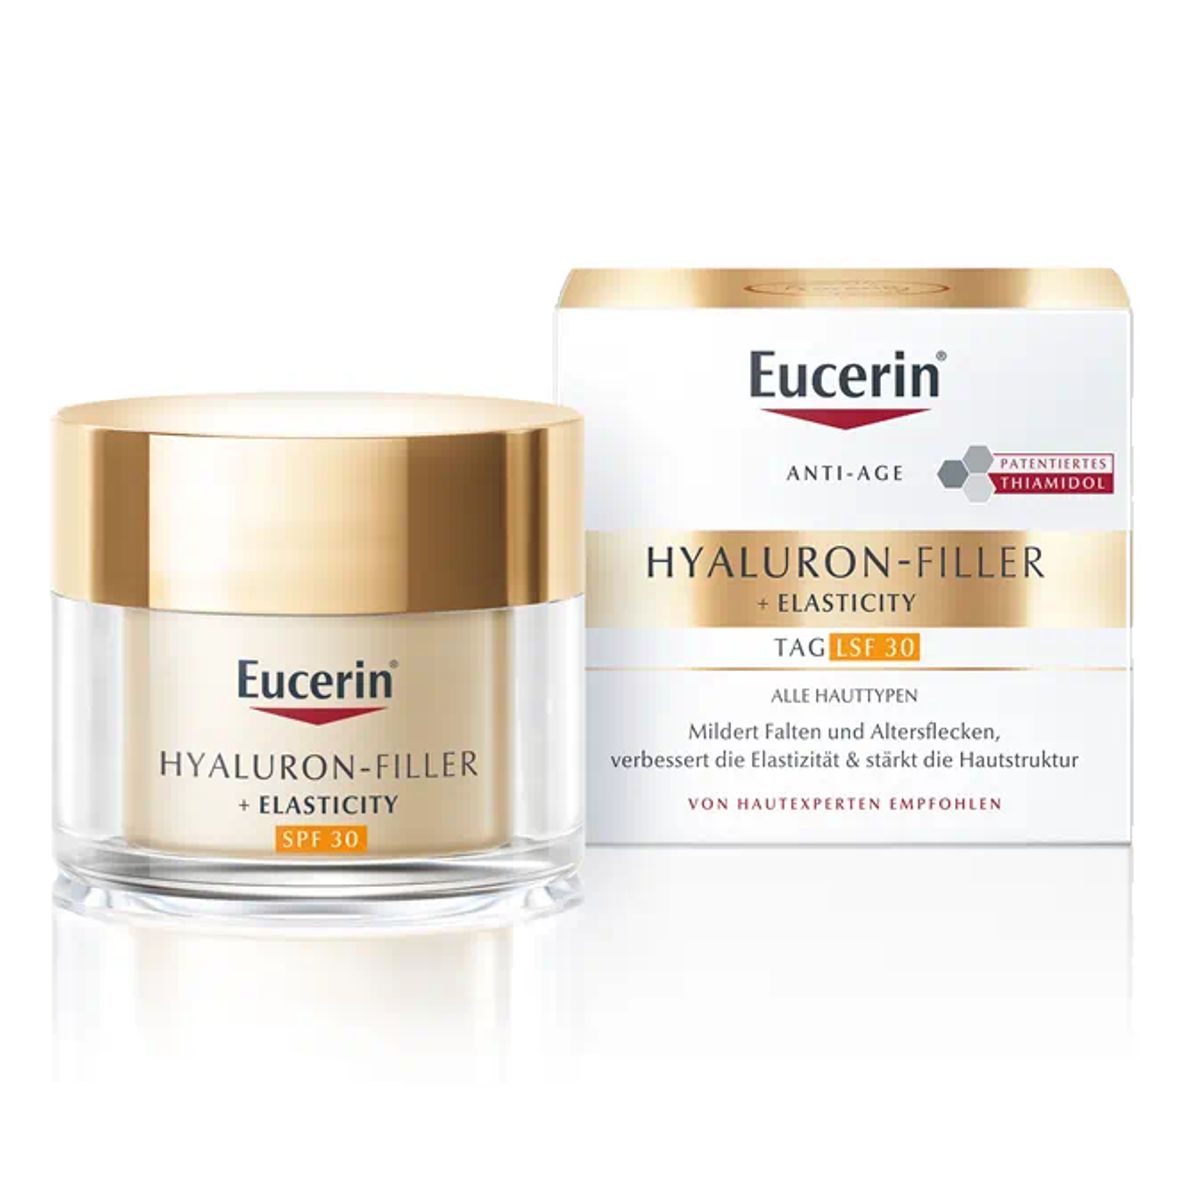 Eucerin Hyaluron-Filler + Elasticity mildert Falten und Altersflecken